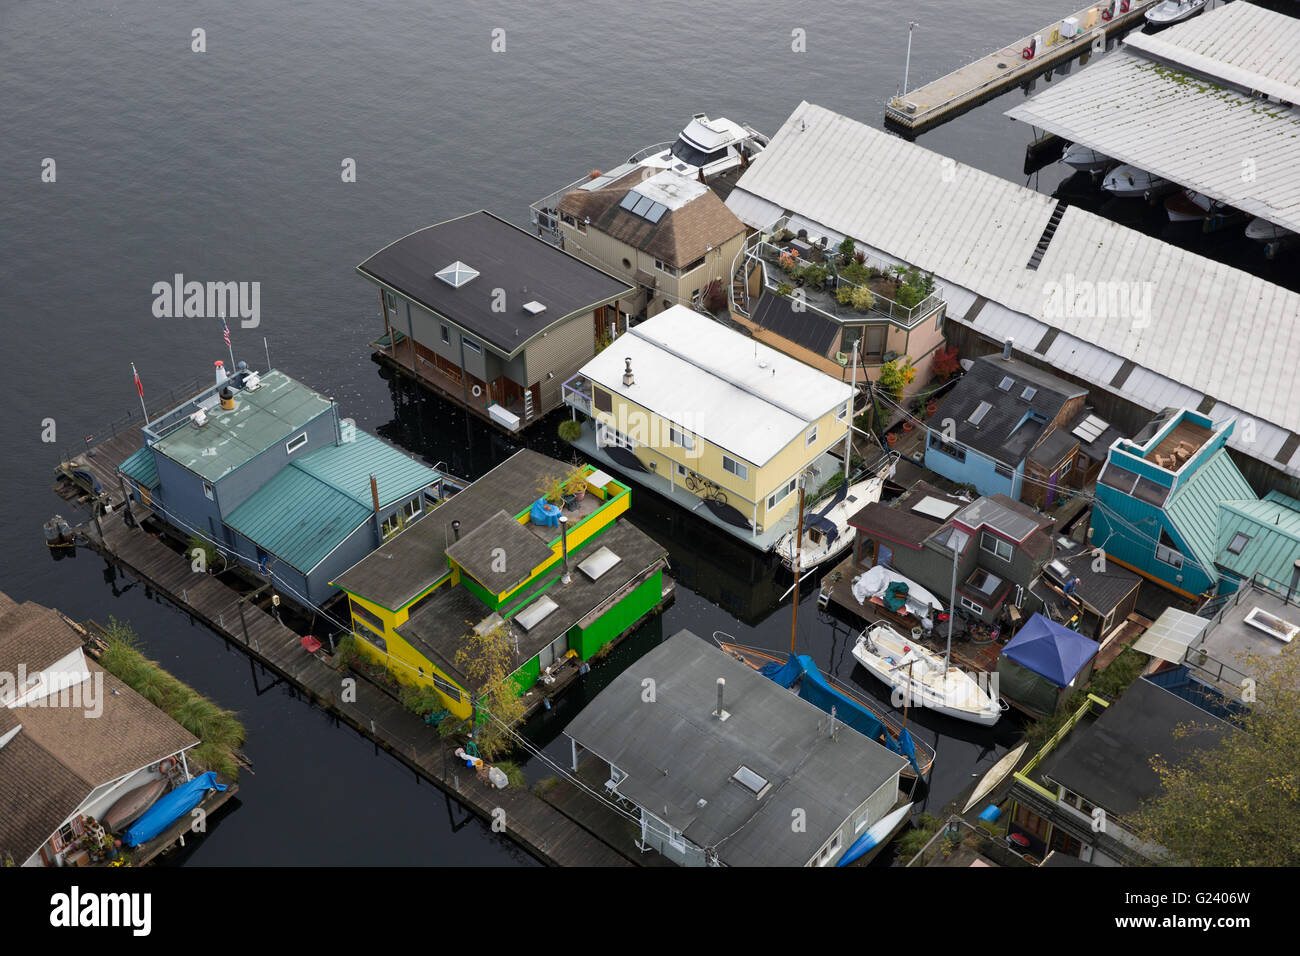 Floating homes on Lake Union in Seattle, Washington Stock Photo